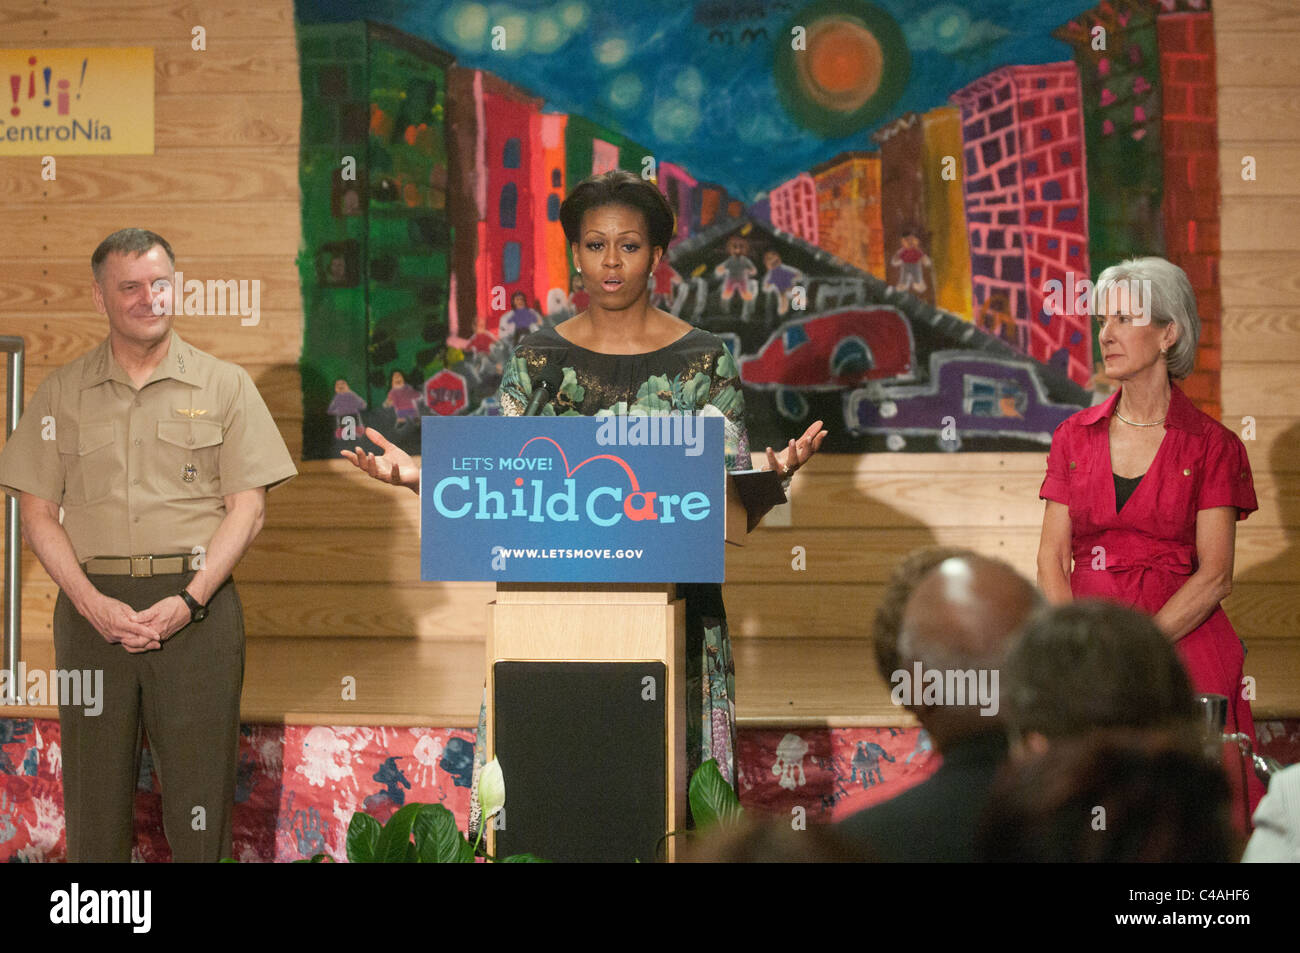 La Primera Dama Michelle Obama reveló permite mover! El cuidado del niño, un nuevo esfuerzo para trabajar con los proveedores de cuidado infantil para fomentar la sana ea Foto de stock